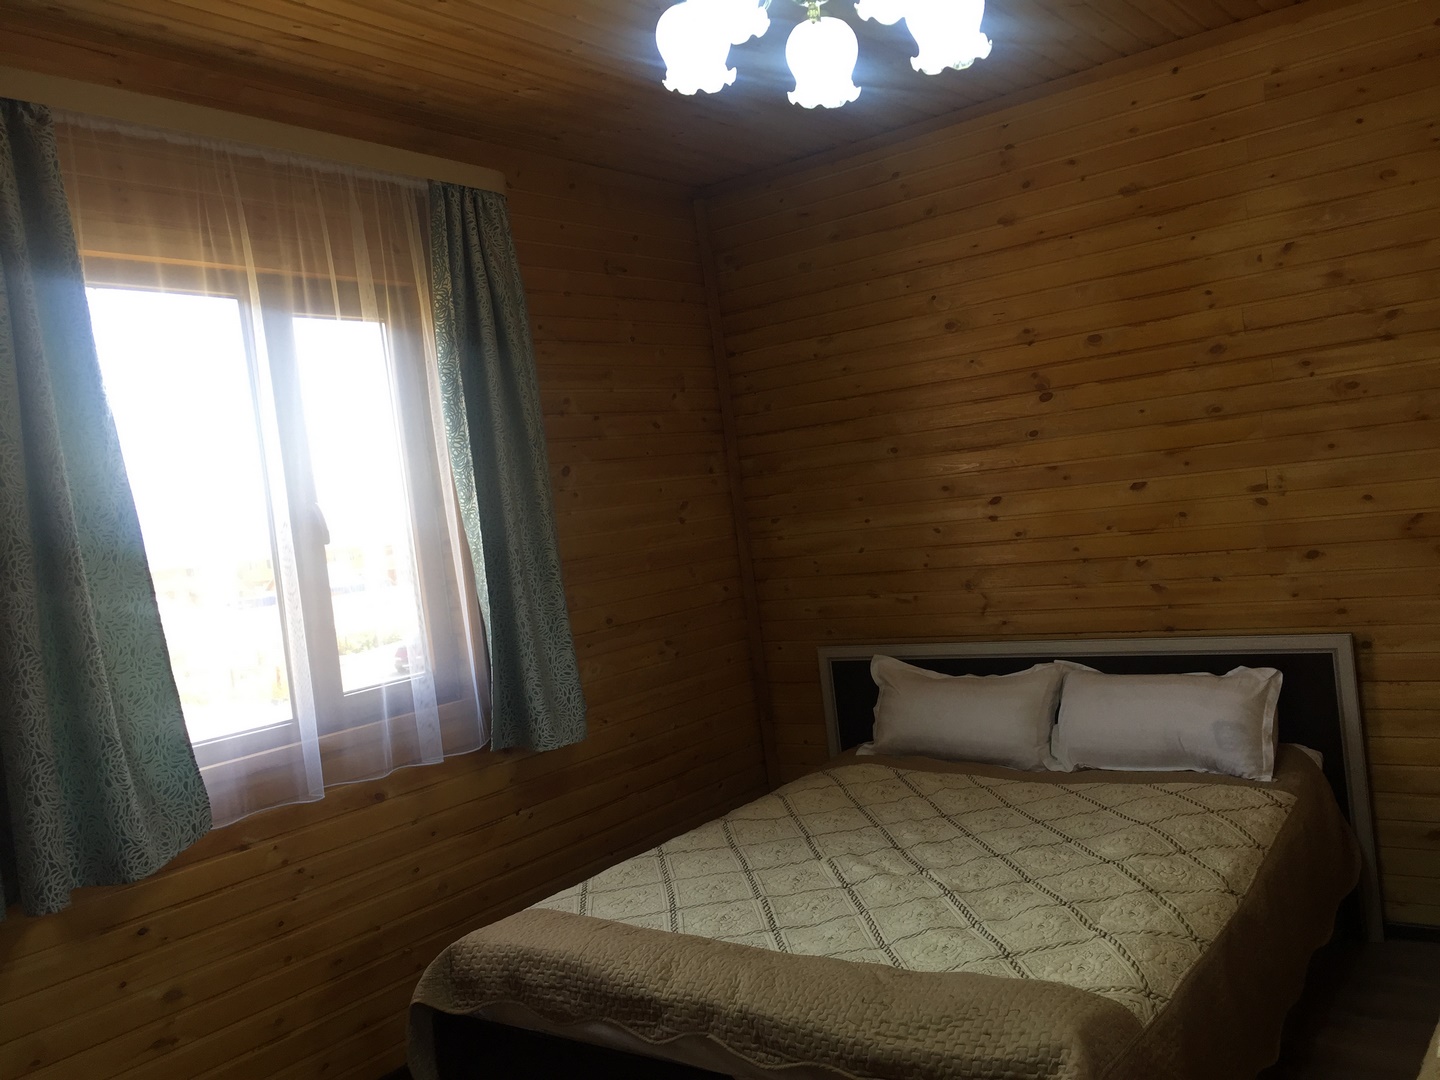 Люкс комнаты 1 комн - Limpopo Travel в России